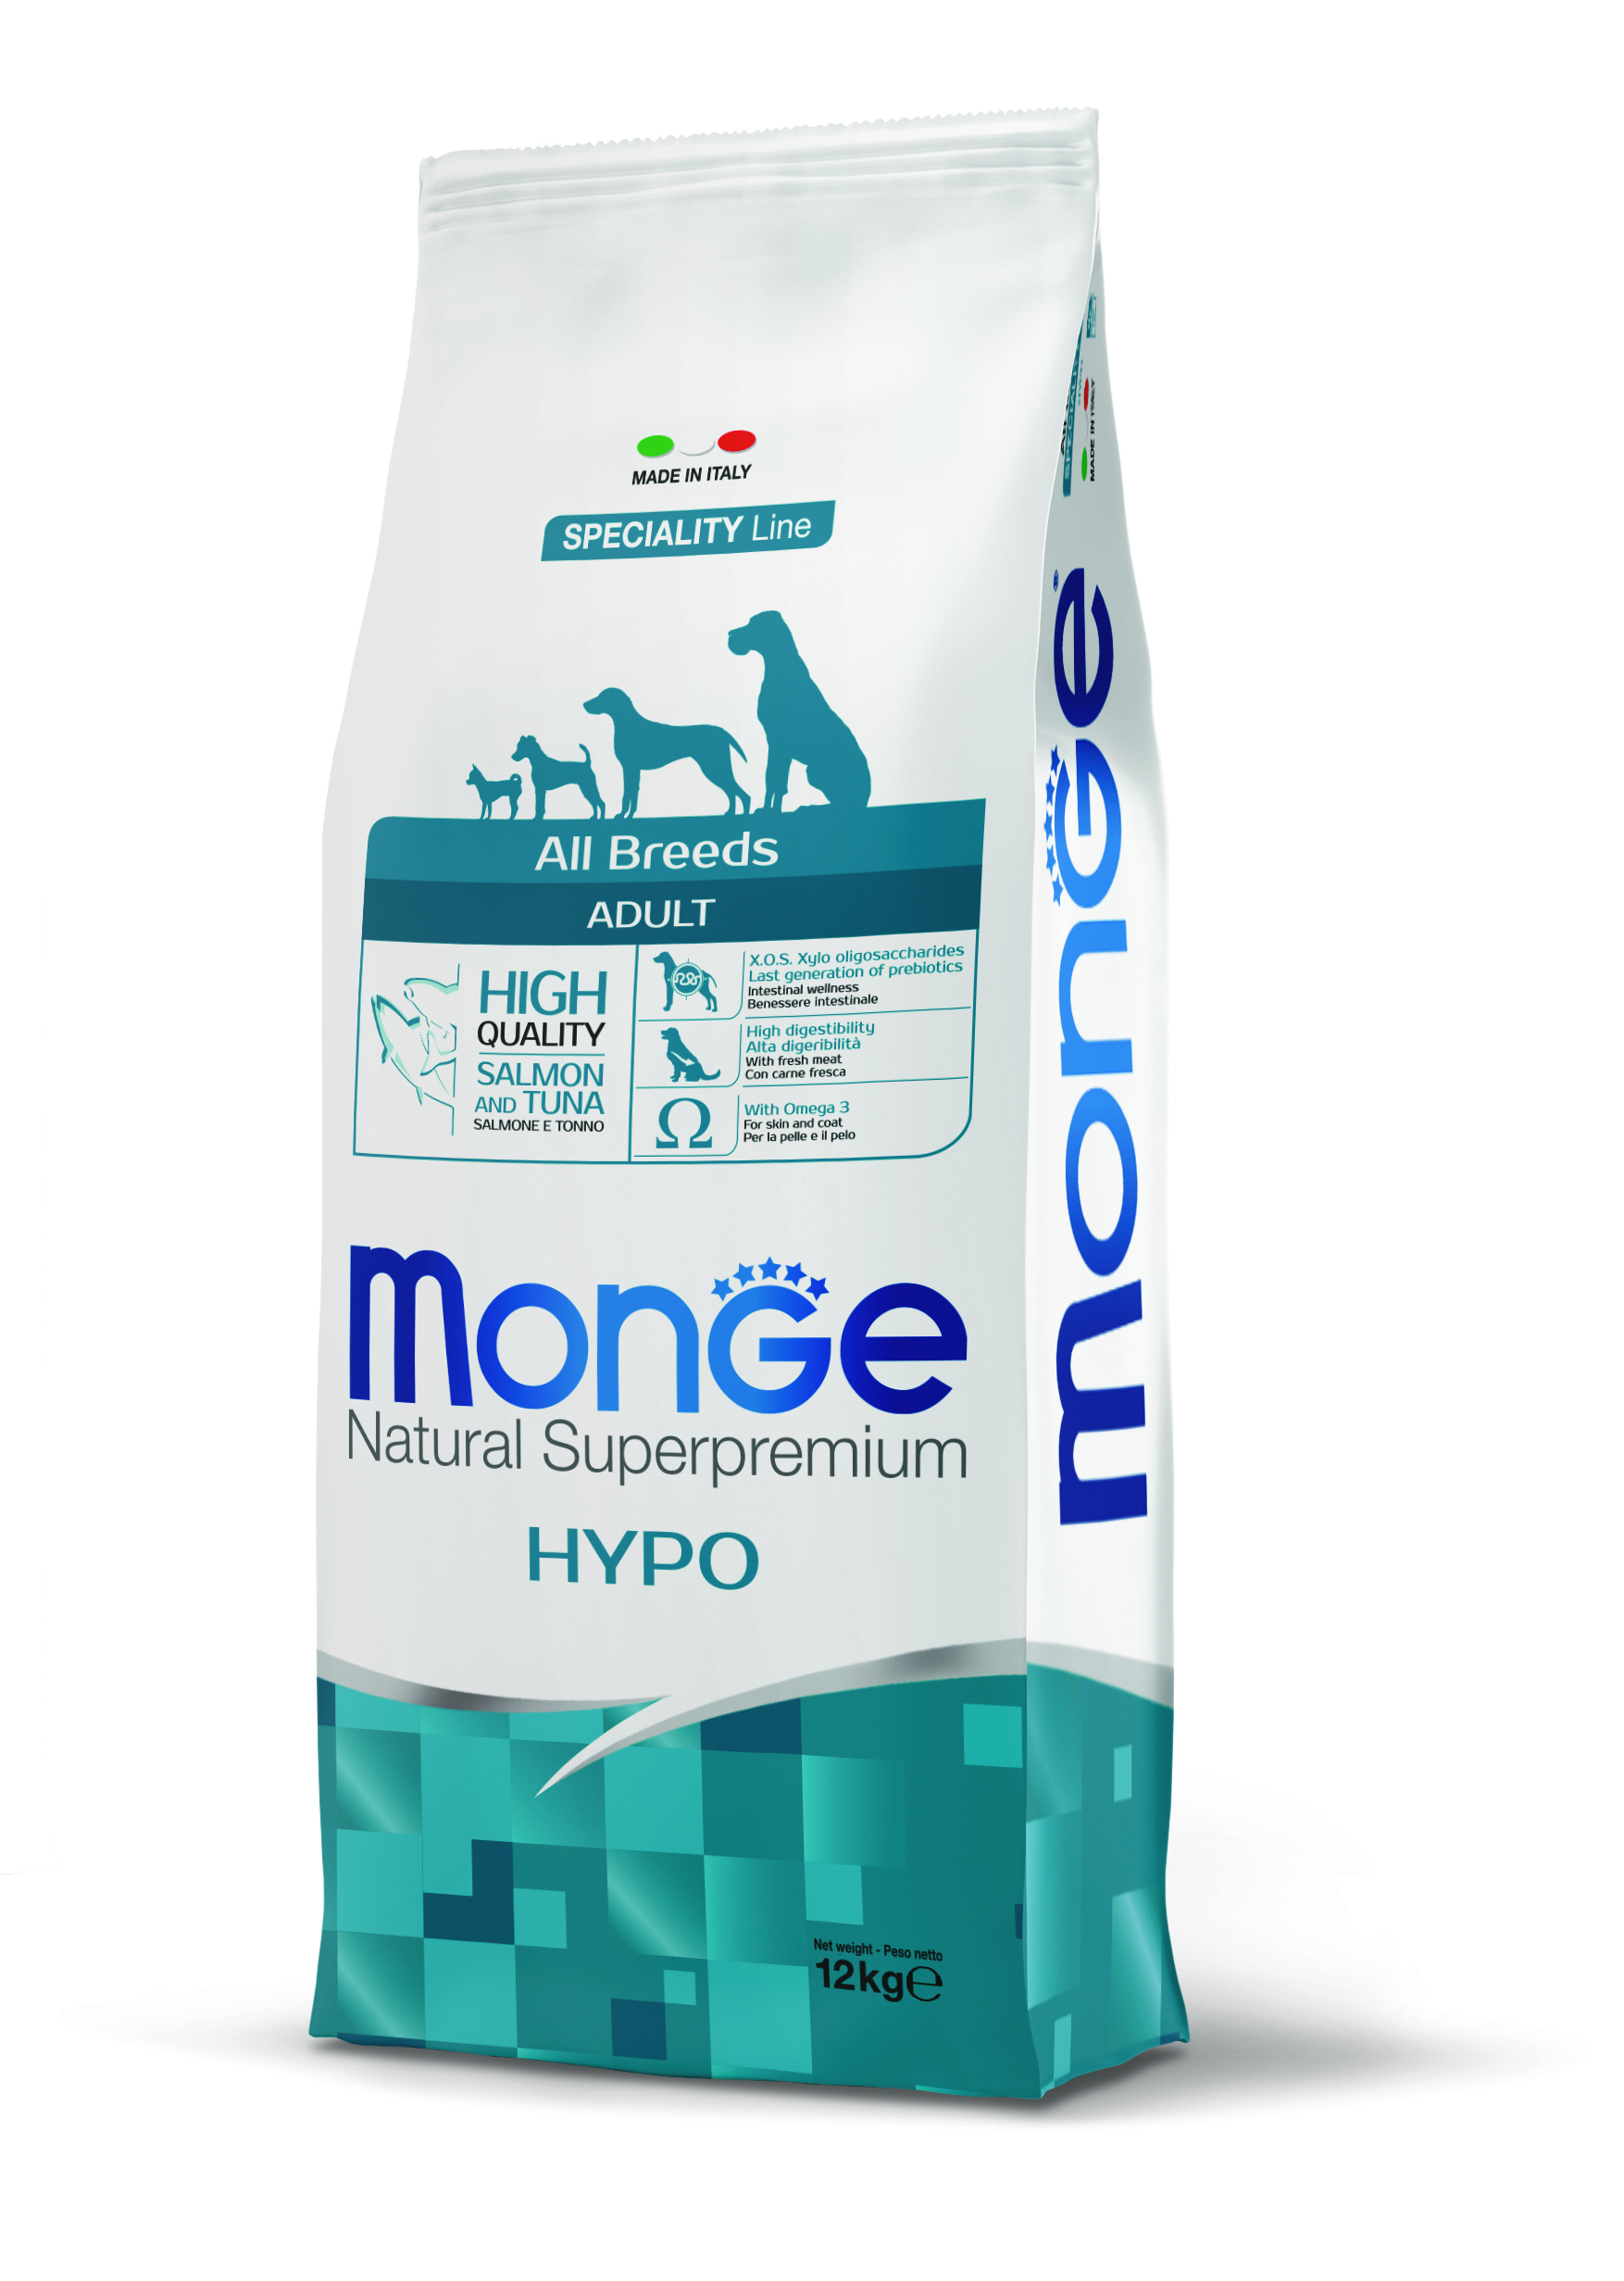 Корм для собак с тунцом. Сухой корм для собак Monge Speciality line. Monge корм для собак лосось 12 кг гипоаллергенный. Монж Hypo для собак. Монж корм для собак гипоаллергенный 12 кг.